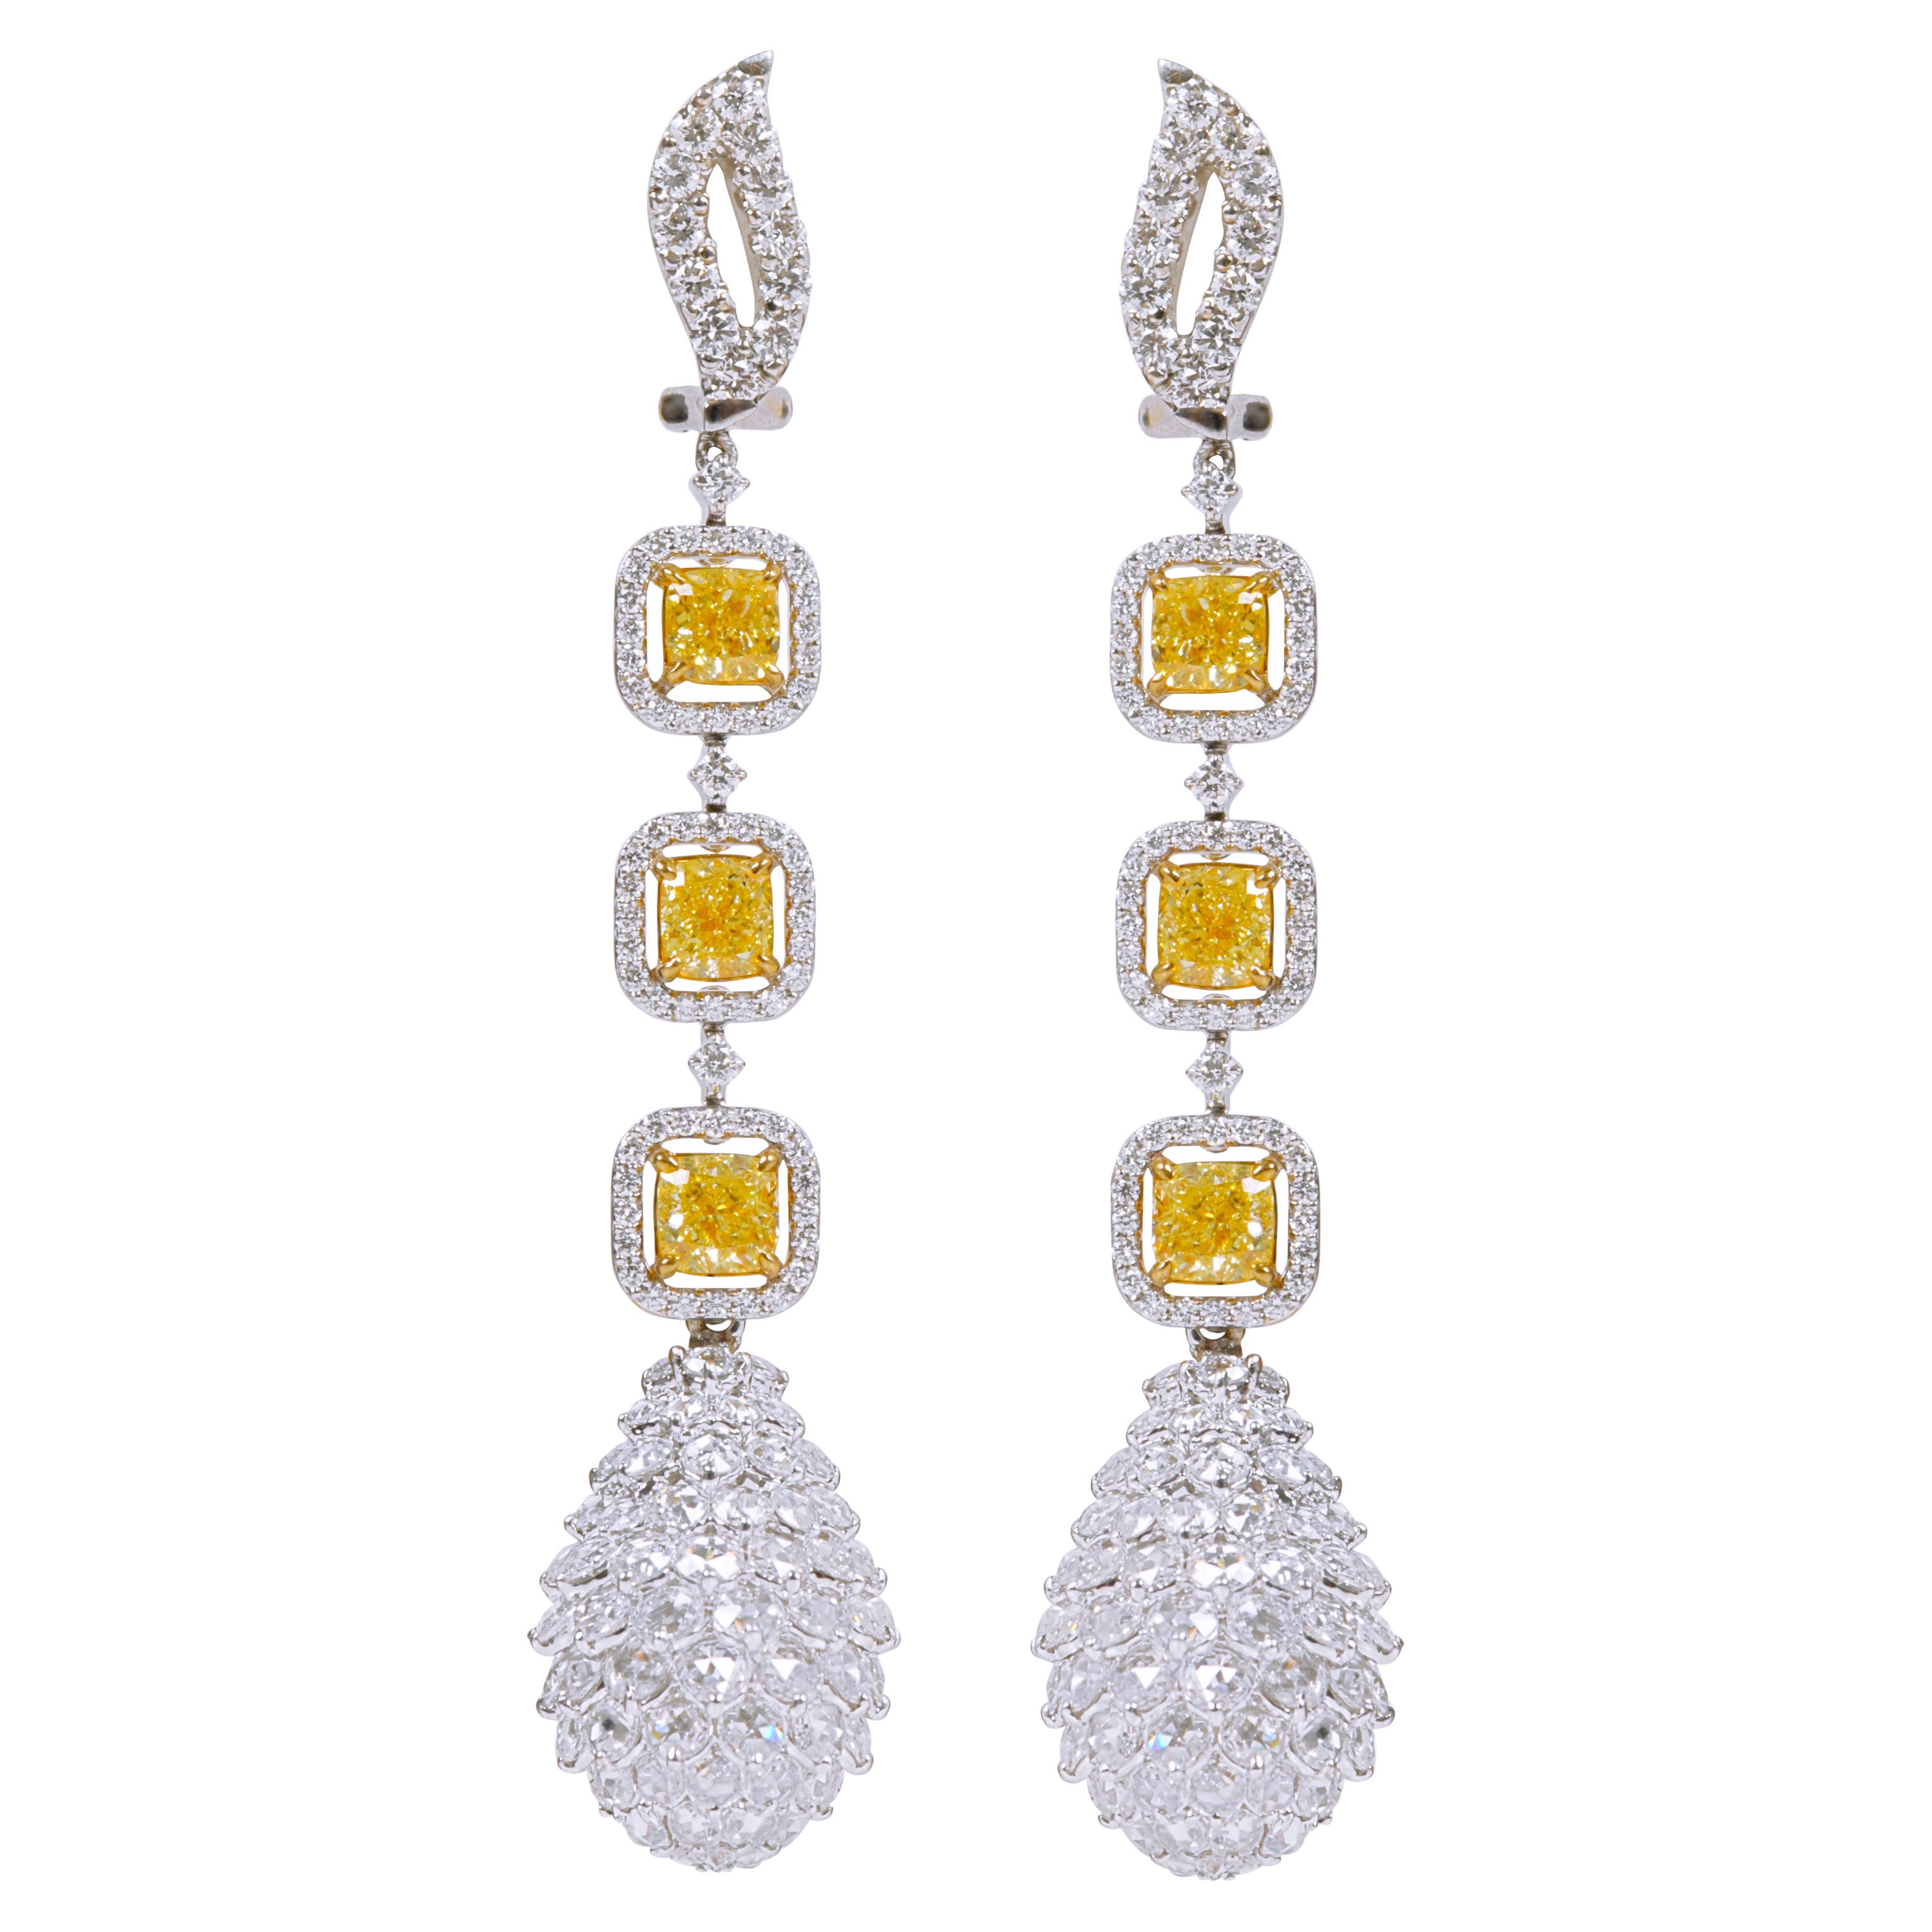 Boucles d'oreilles pendantes ananas en or 18 carats avec diamants jaunes et blancs de 15,72 carats